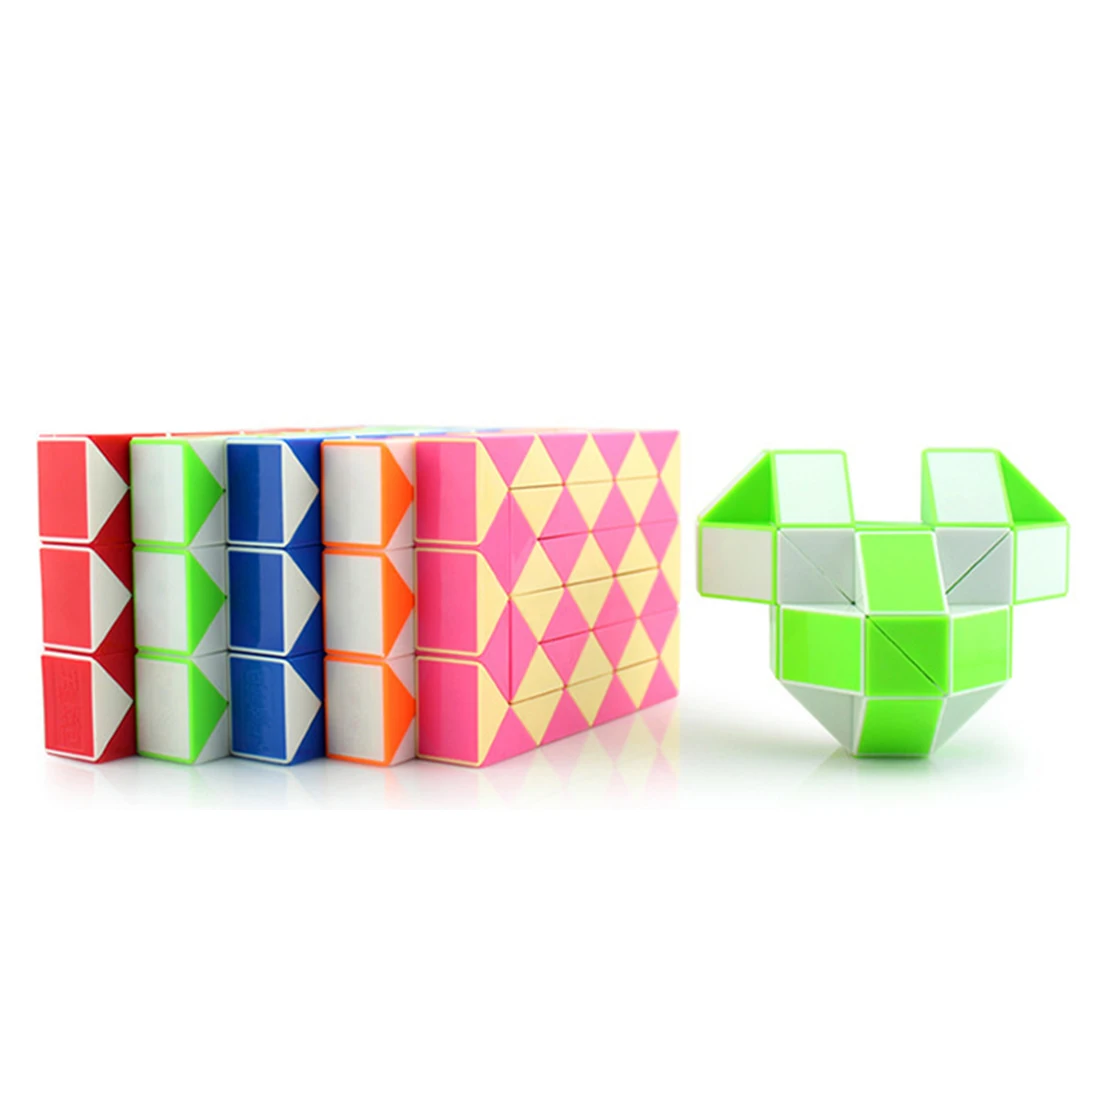 48 блоки линейка магический куб головоломка магический Линейка Куб змея твист Puzzle Развивающие игрушки для детей 6 молодежи для взрослых